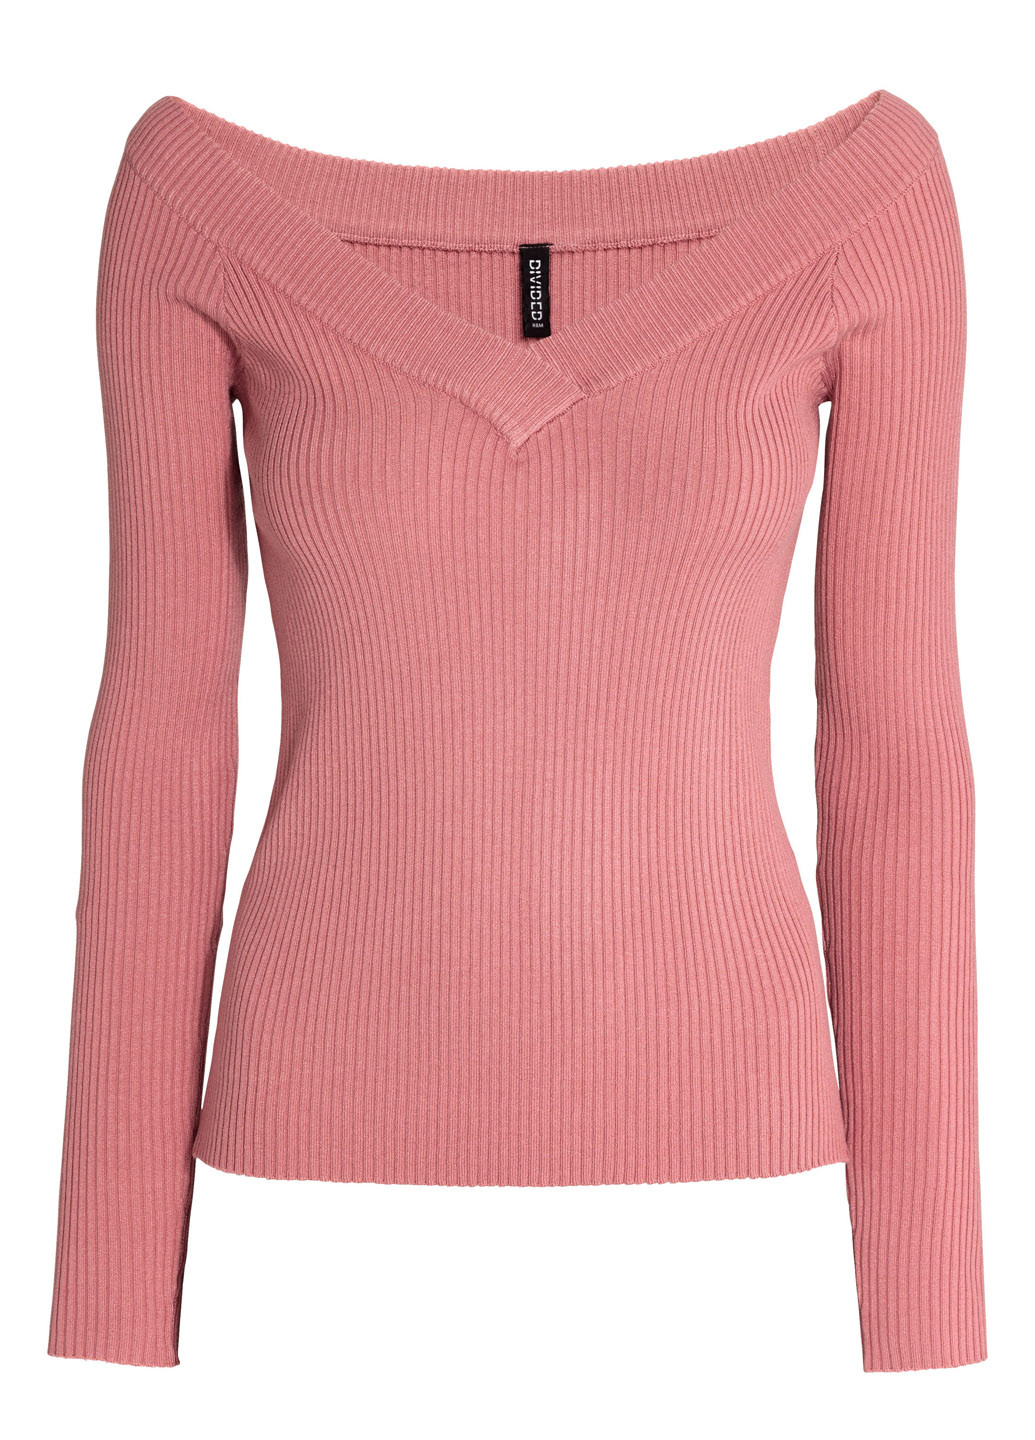 Темно-розовый демисезонный пуловер пуловер H&M